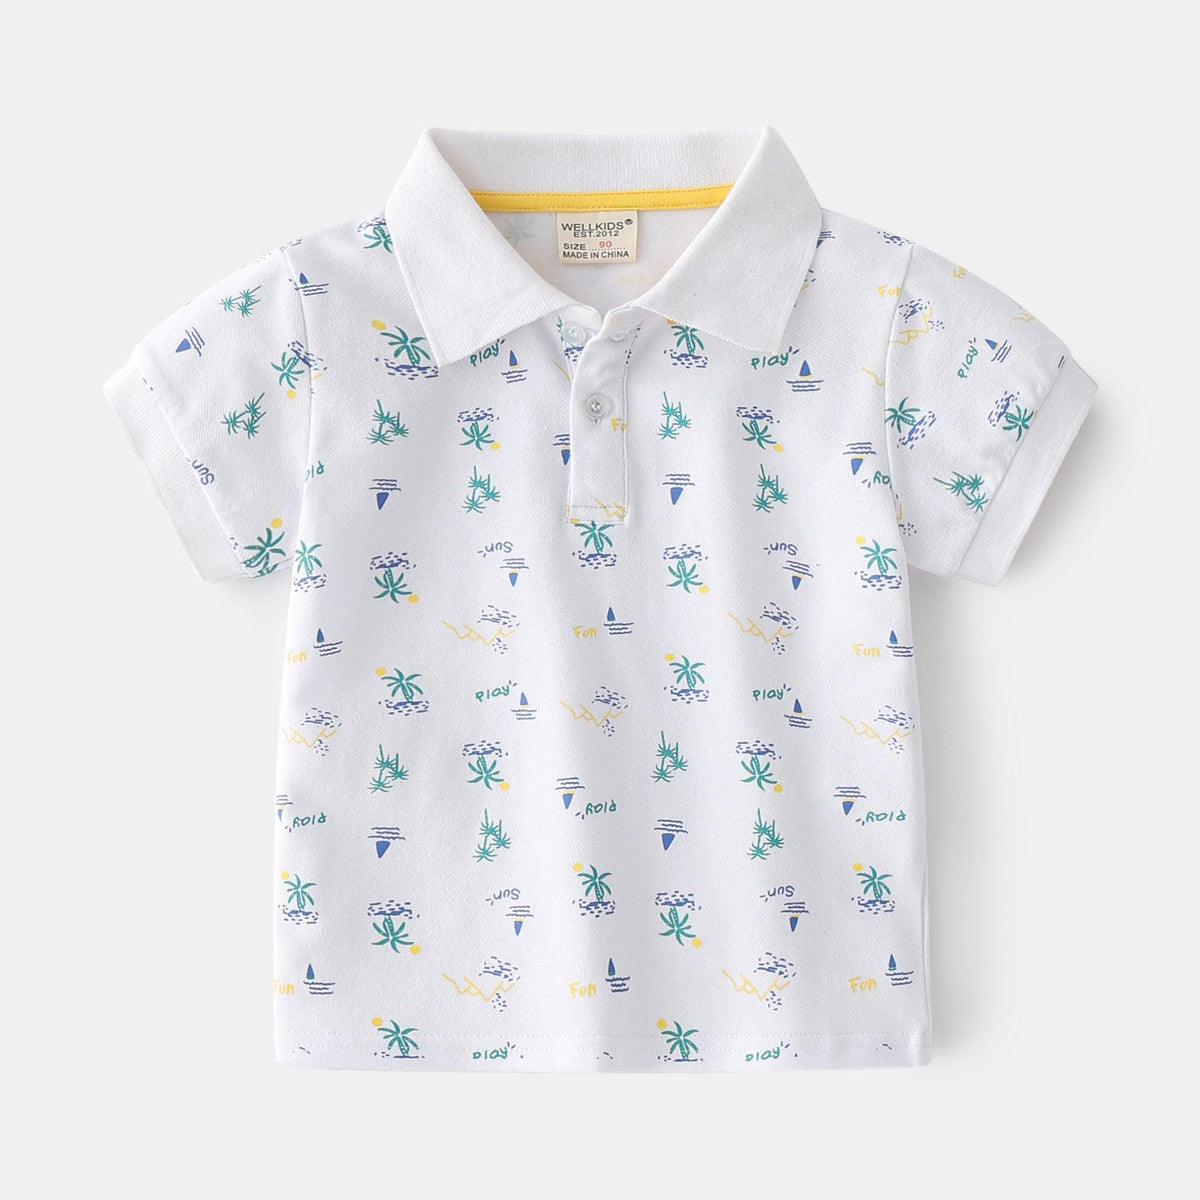 Summer Boys' Cotton Short-sleeved Polo Shirt